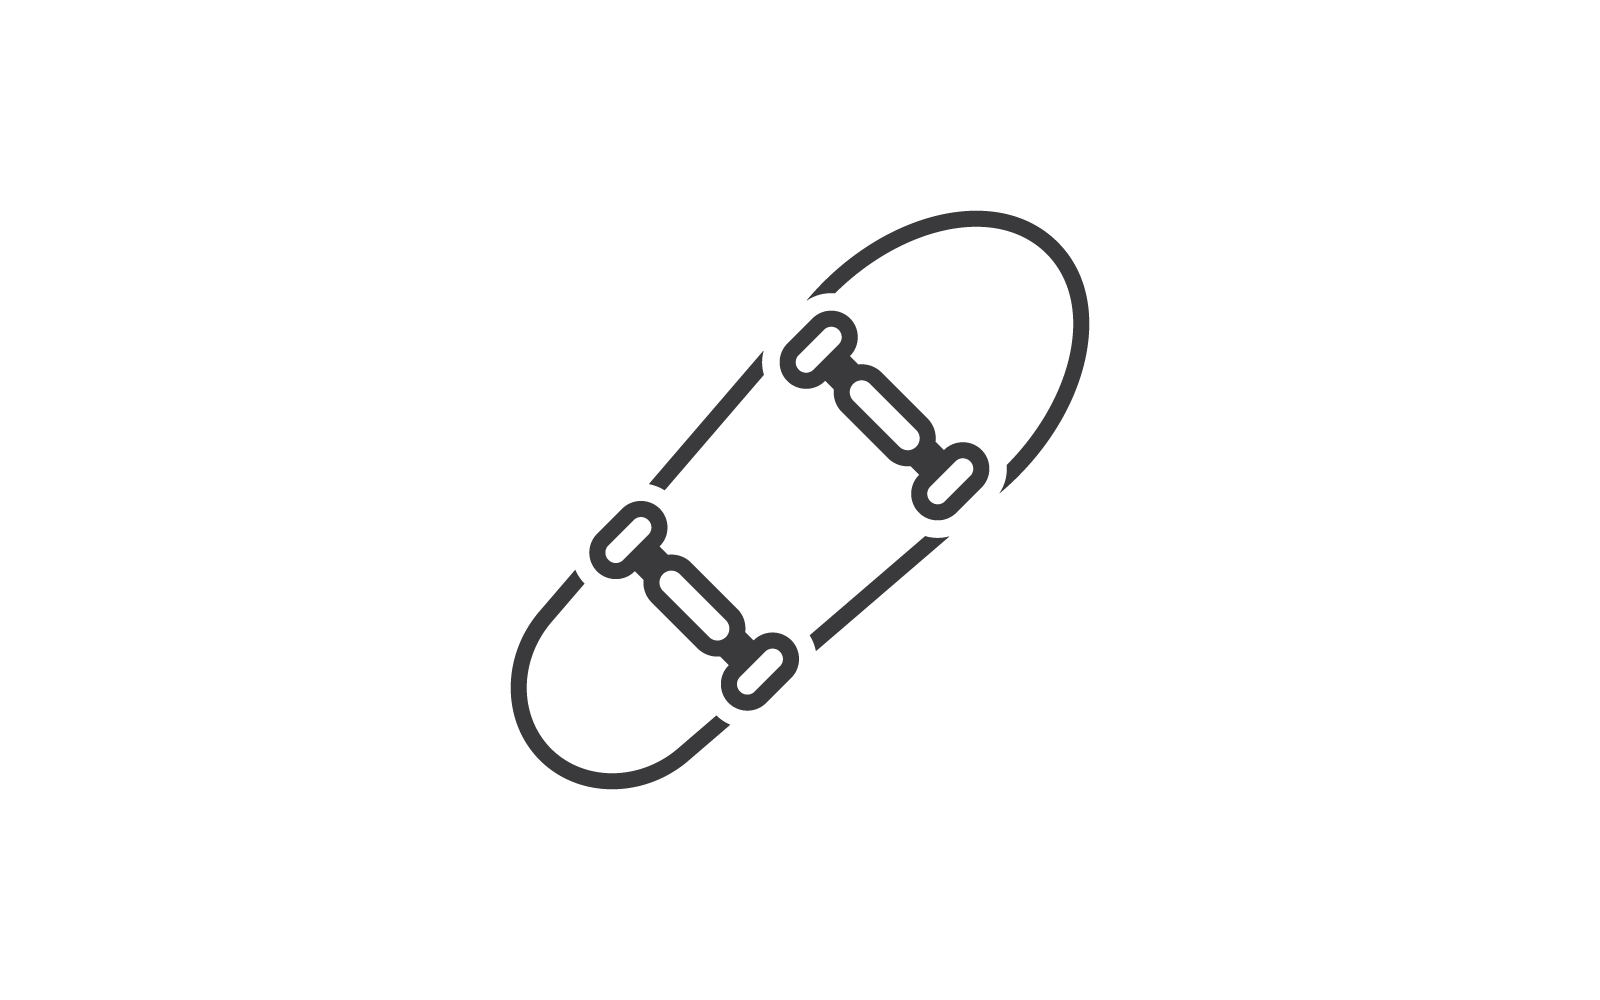 Le design plat vectoriel d&amp;#39;illustration d&amp;#39;icône de planche à roulettes est le logo et l&amp;#39;icône pour le divertissement de patineur de sports